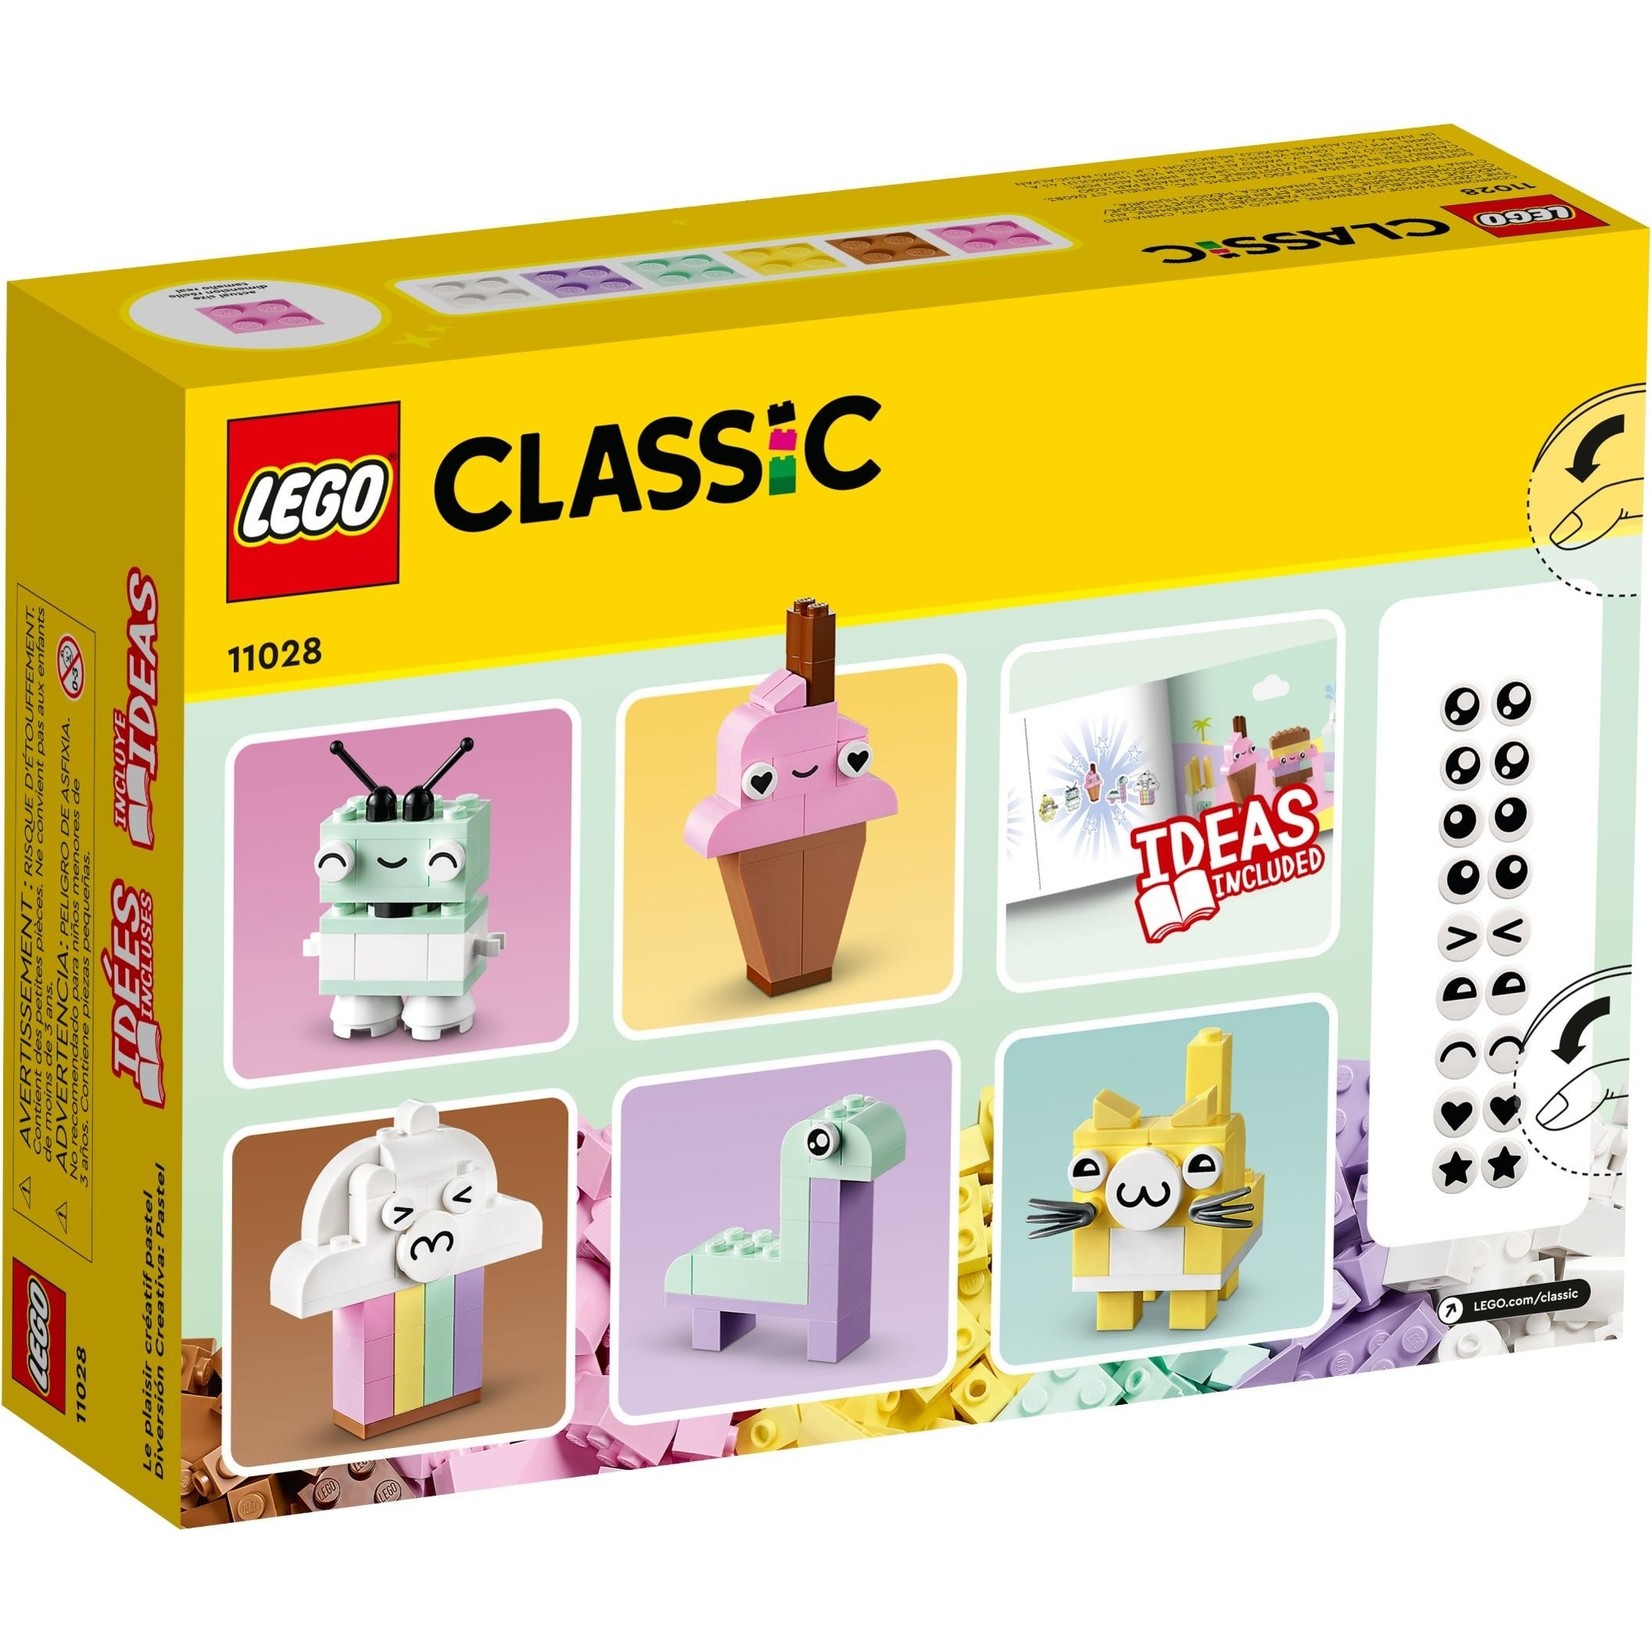 LEGO Creatief spelen met pastelkleuren - 11028